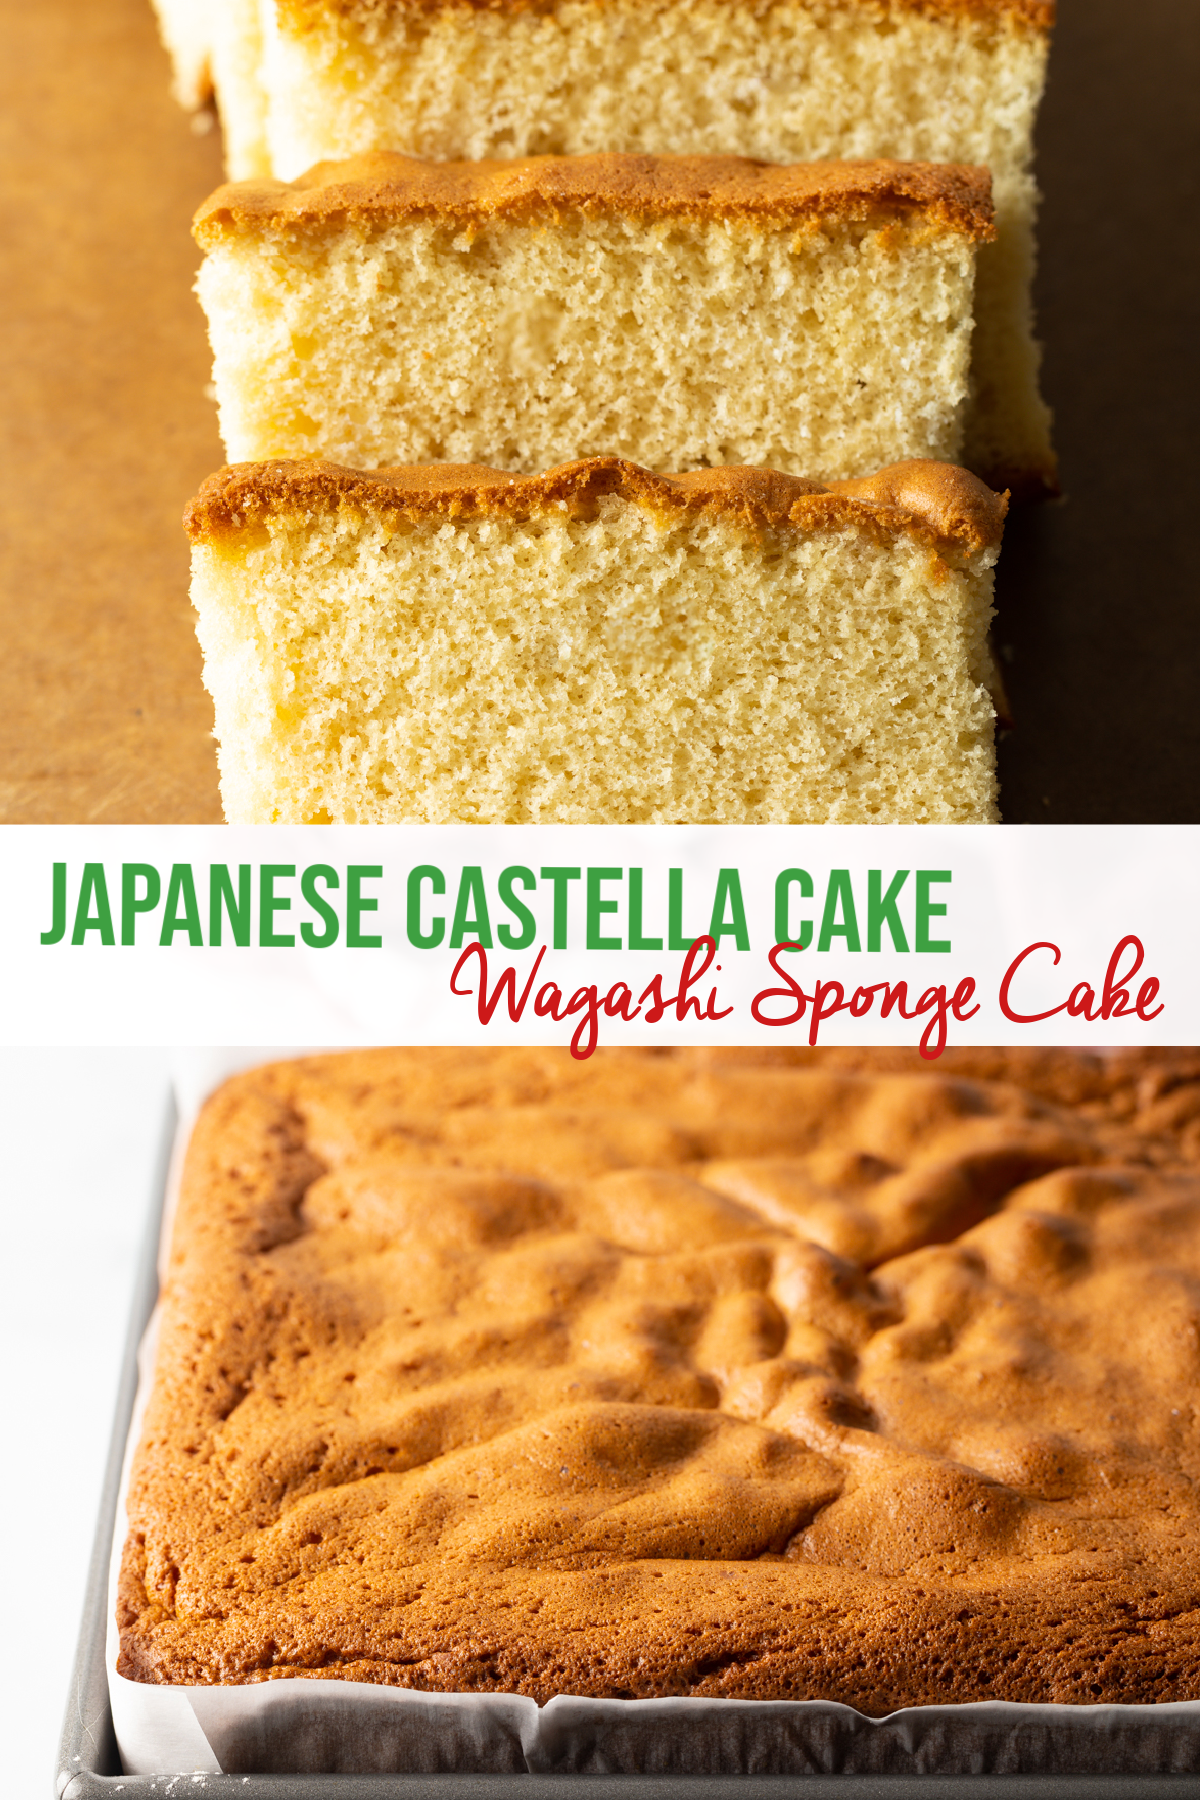 Japanese castella cake wagashi sponge cake